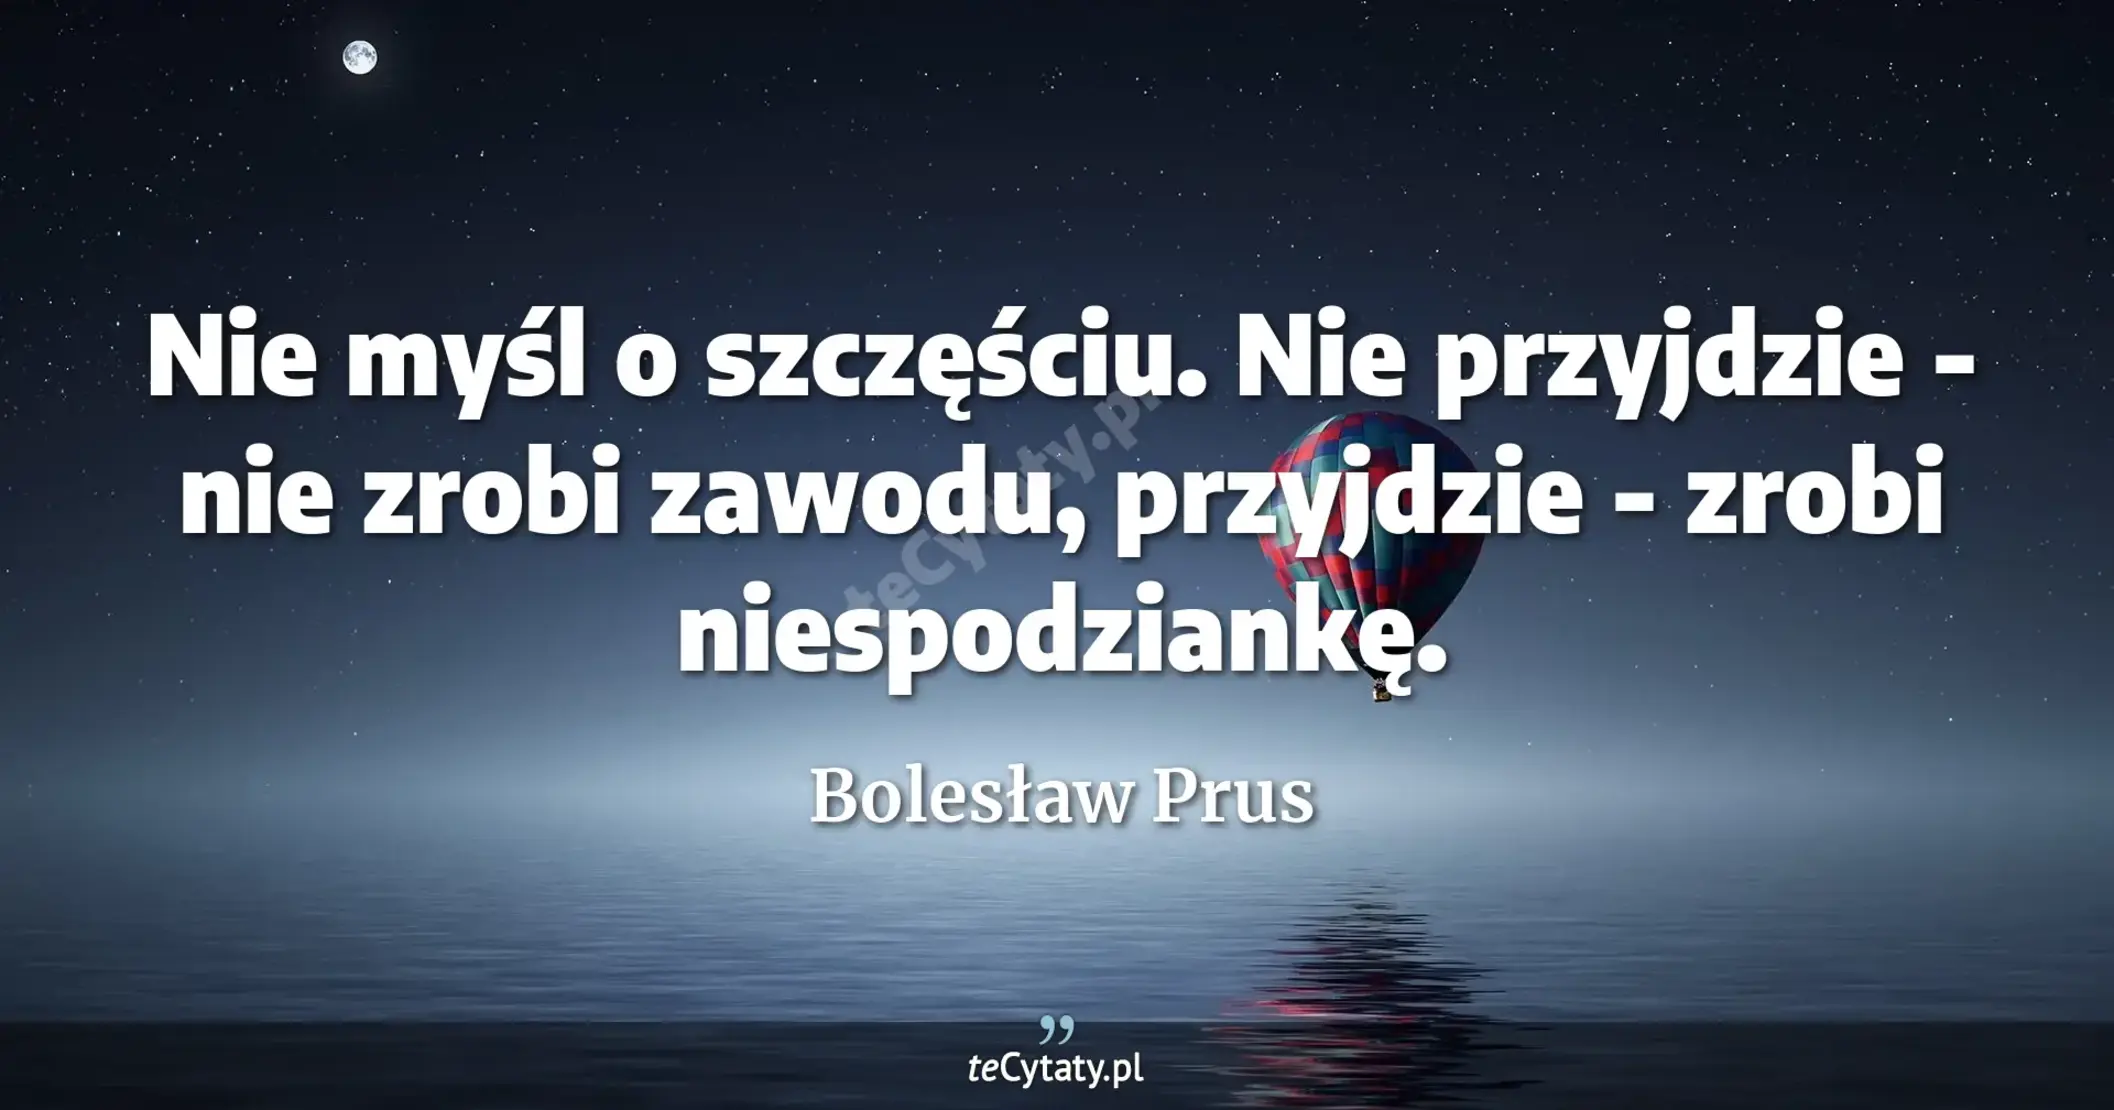 Nie myśl o szczęściu. Nie przyjdzie - nie zrobi zawodu, przyjdzie - zrobi niespodziankę. - Bolesław Prus